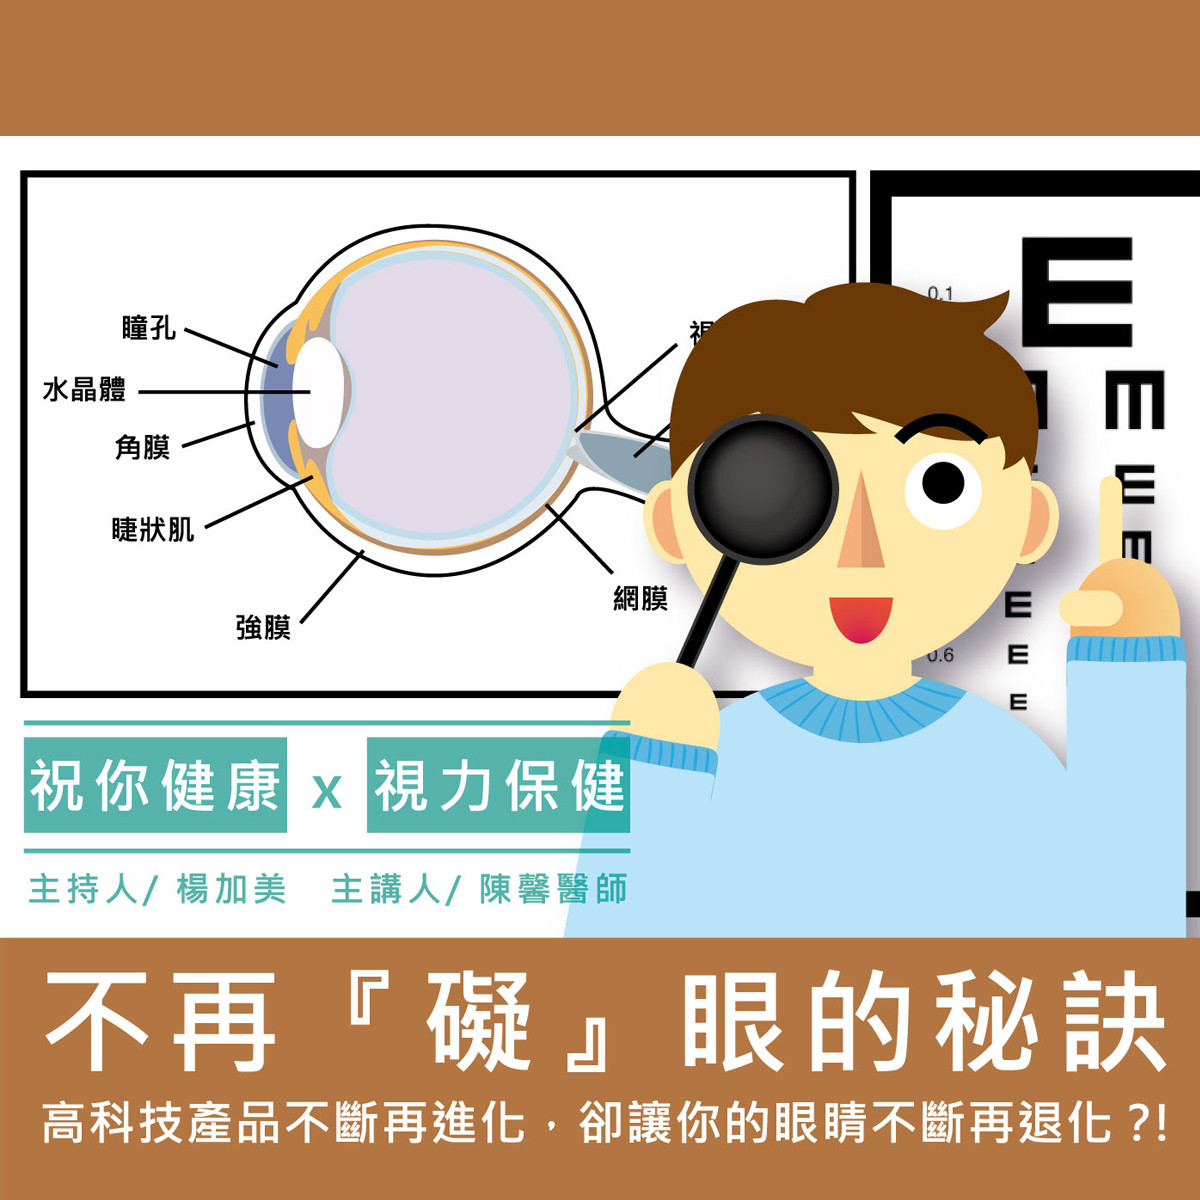 【祝你健康】視力保健 - 9.白內障封面圖